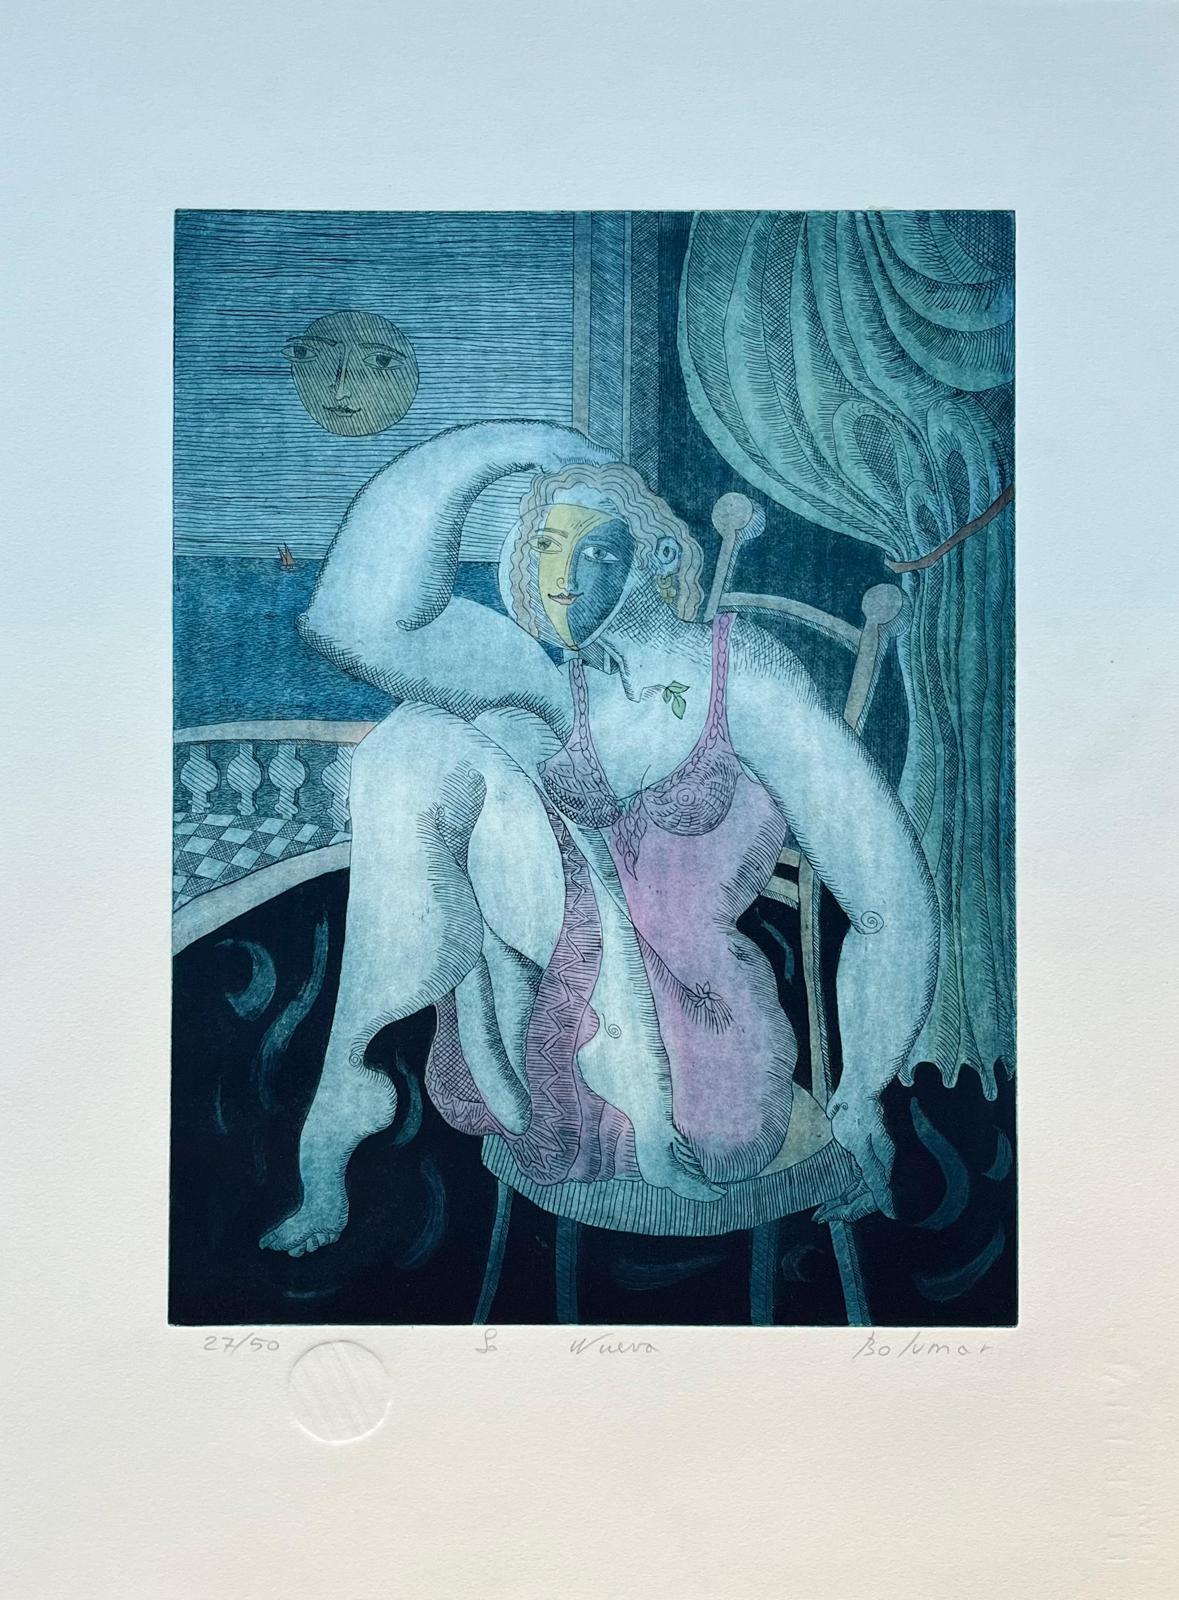 Magda Bolumar (Spain, 1936)
'La nueva (Carpeta ""La luna presente"")', 1997
etching, aquatint on paper Rives BFK 300 g.
27.6 x 19.7 in. (70 x 50 cm.)
Edition of 50
Unframed
ID: BOL1268-002-050_1
Hand-signed by